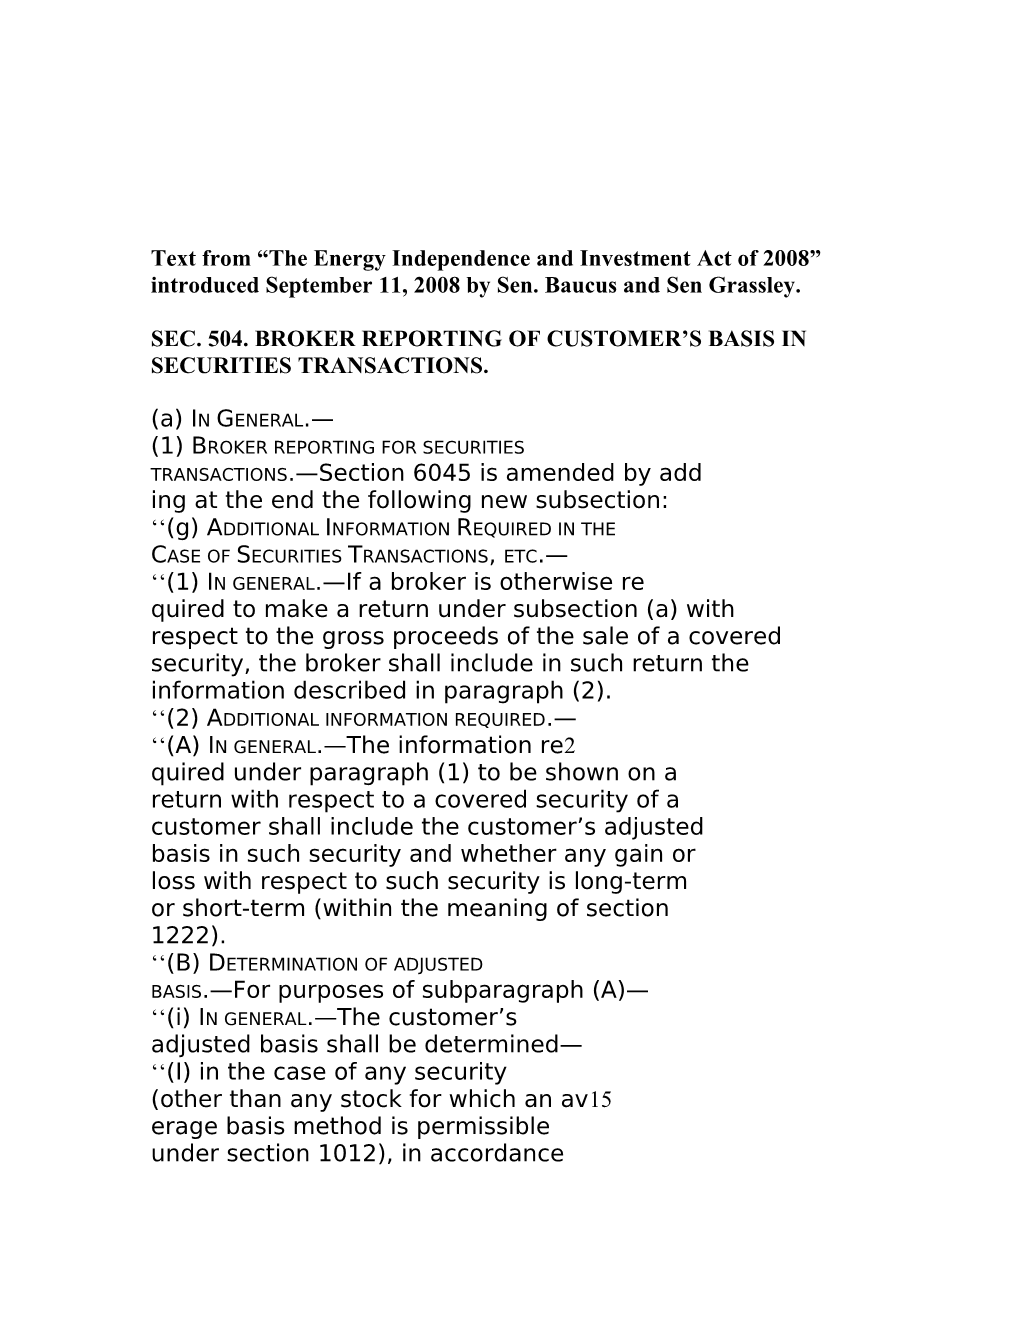 Sec. 504. Broker Reporting of Customer S Basis In